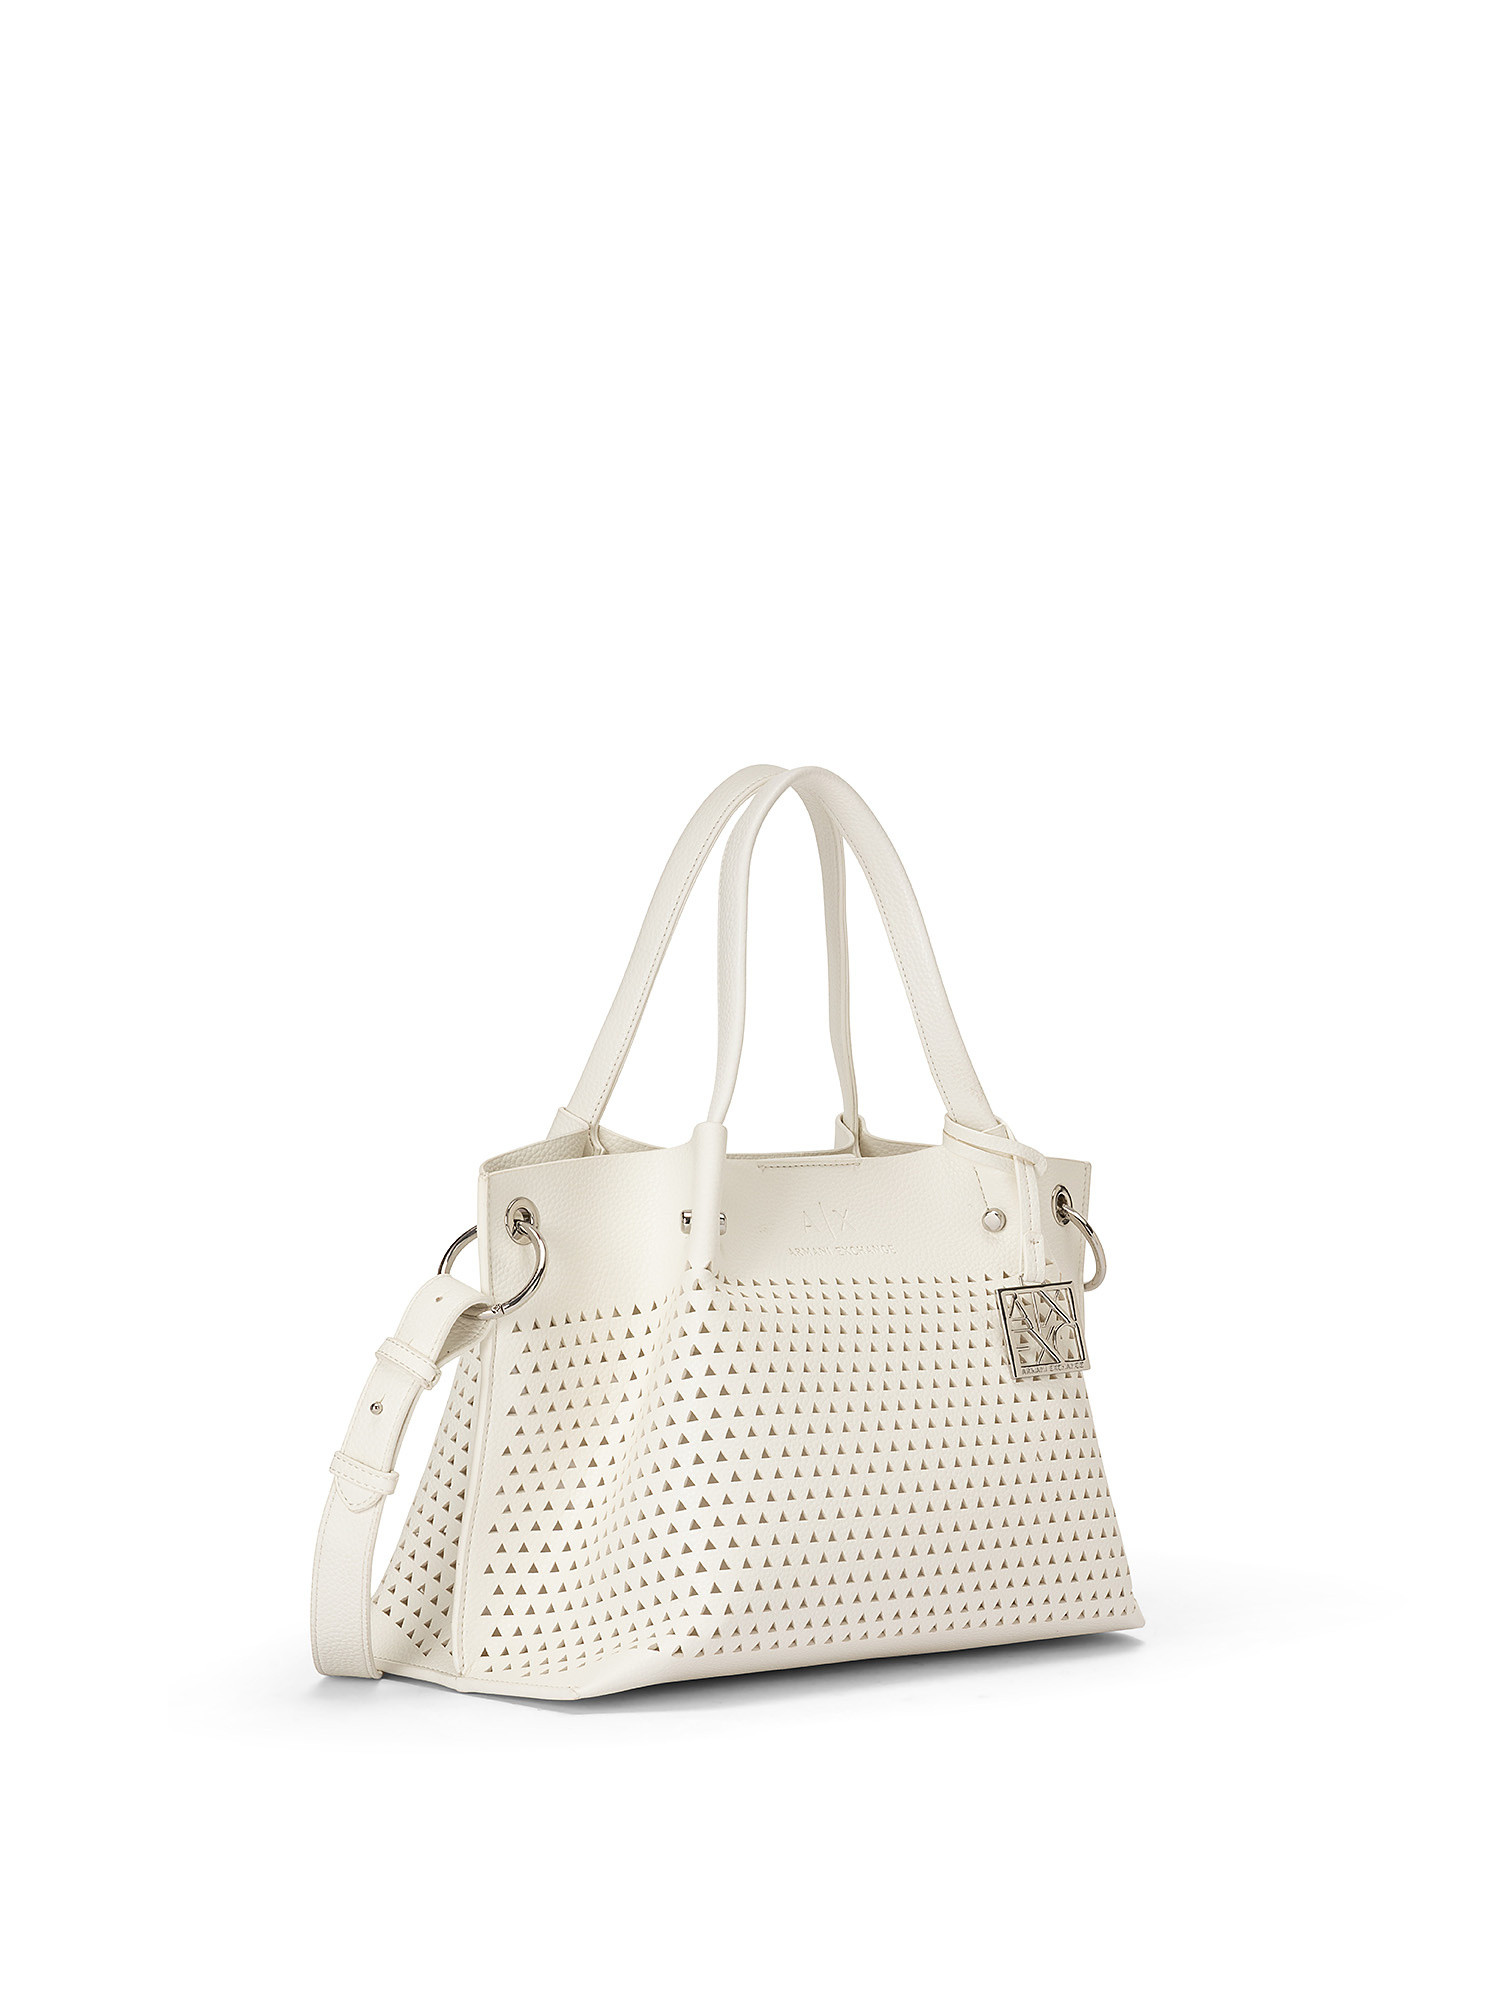 Shopping bag zip top, White, large image number 1